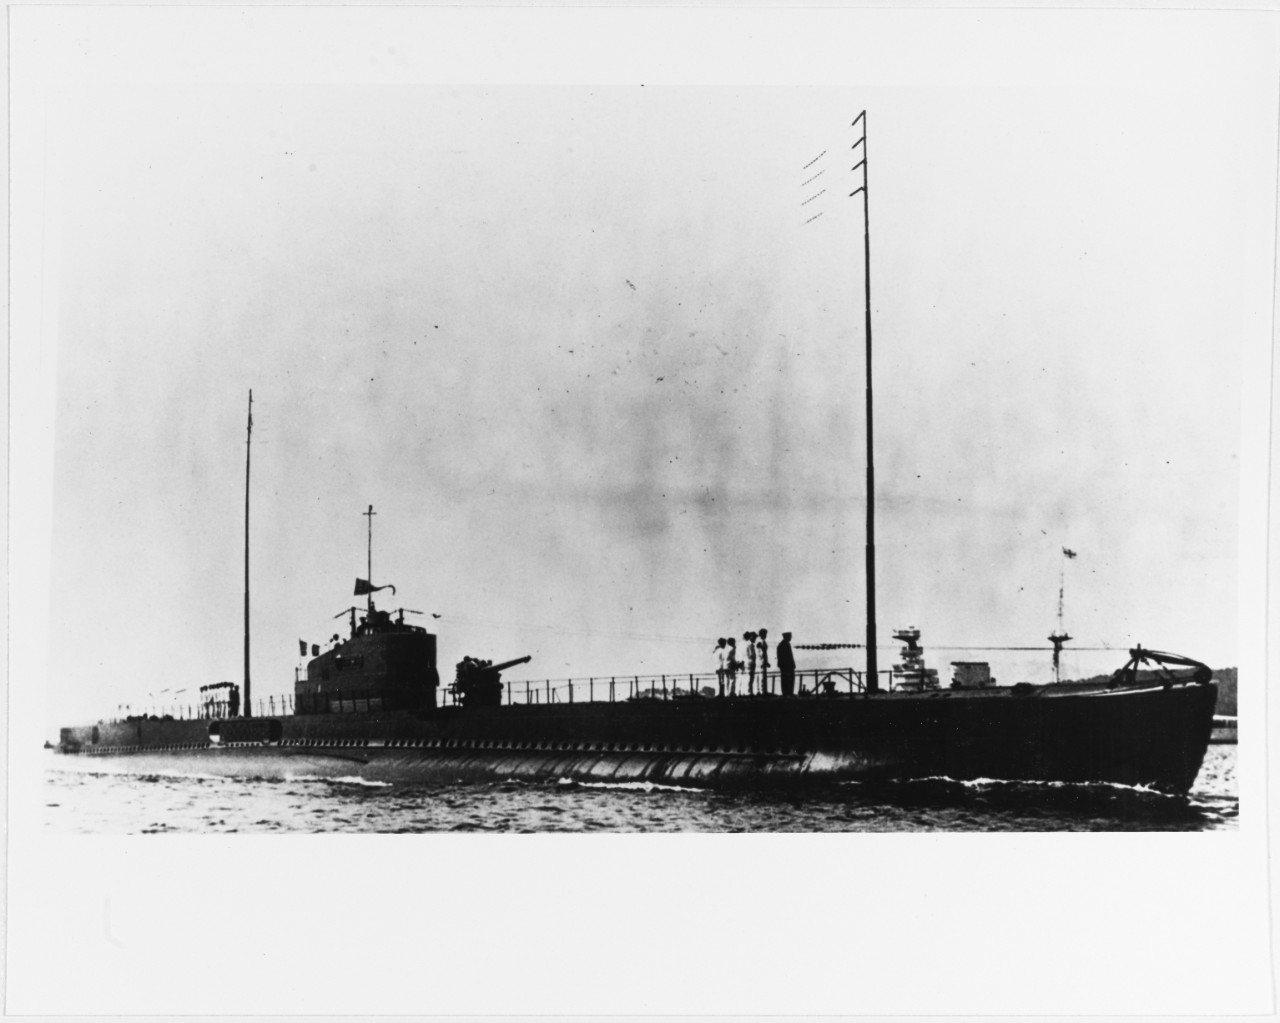 French "1500-ton" type submarine before World War II.